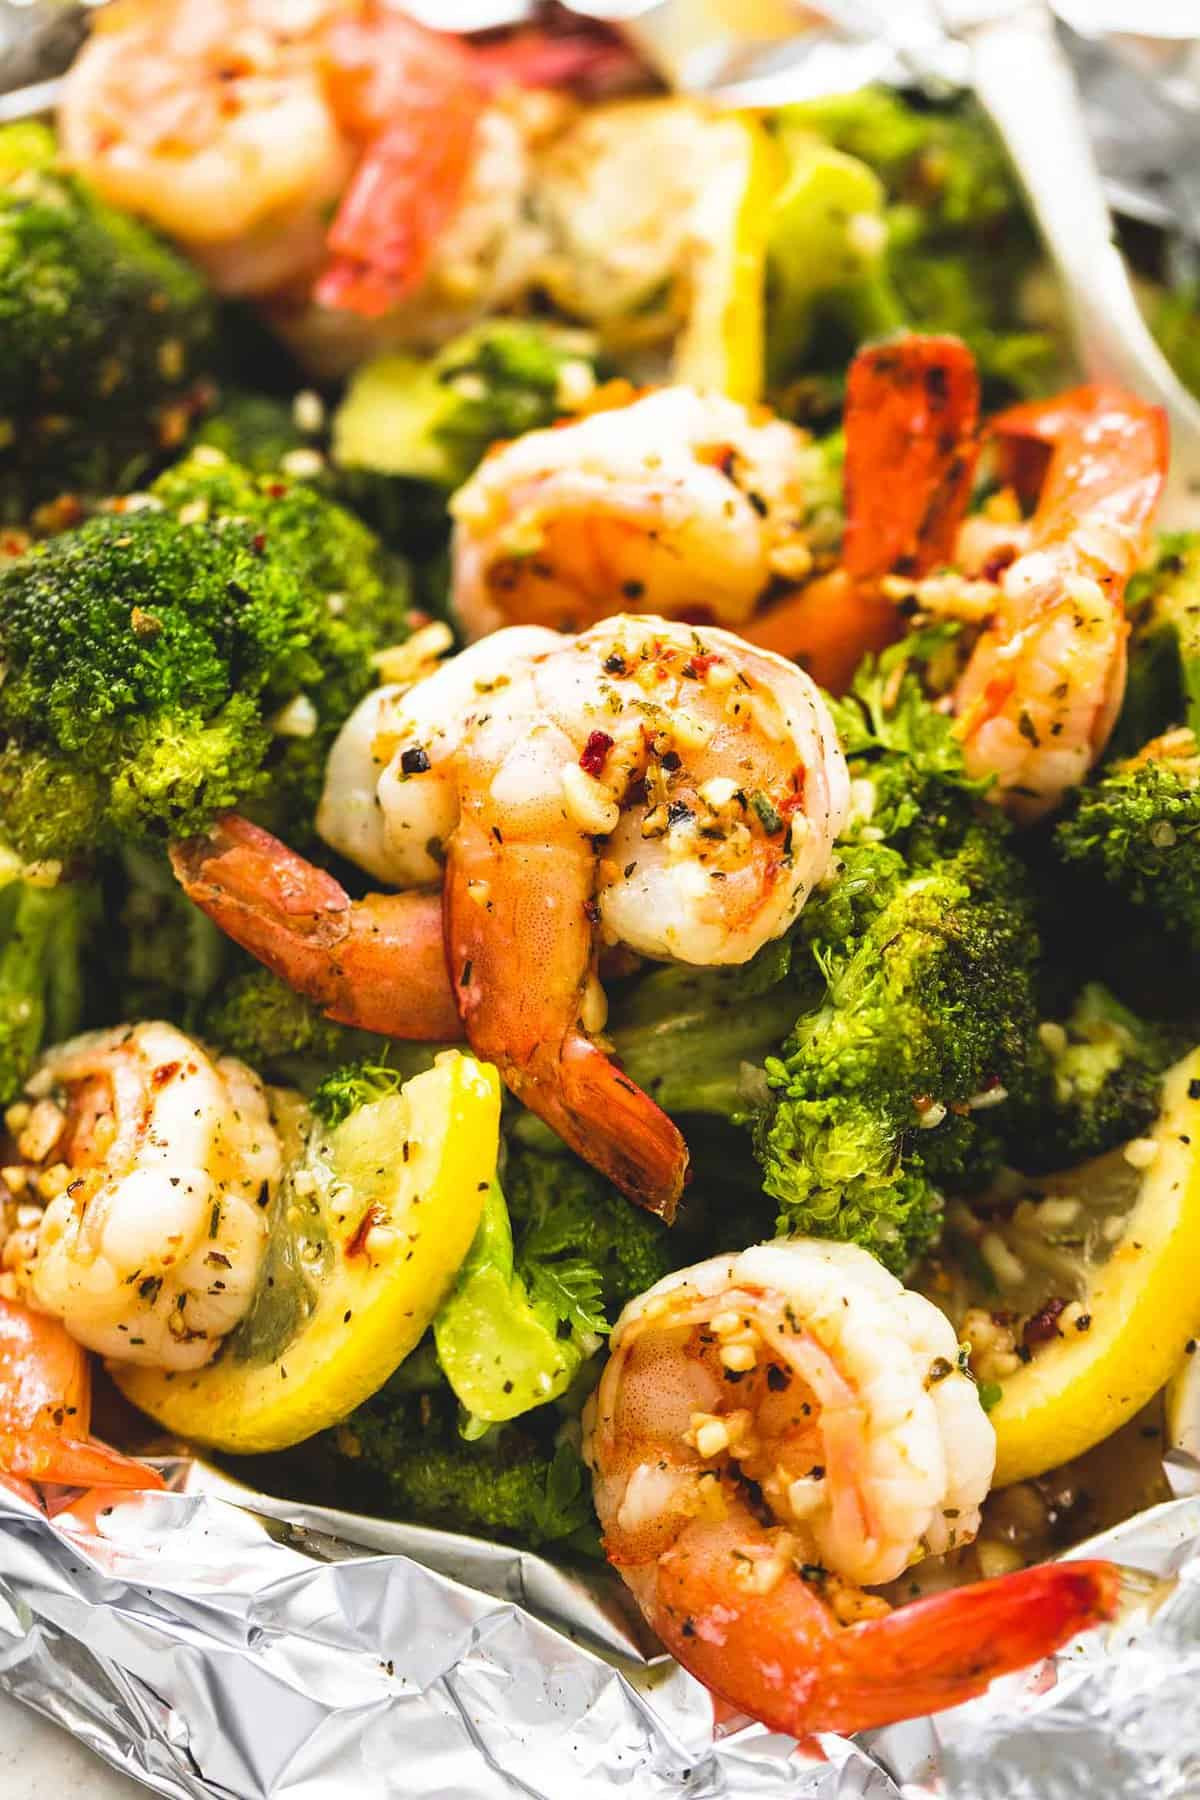 Shrimp And Broccoli Recipes
 Lemon Herb Shrimp and Broccoli Foil Packs